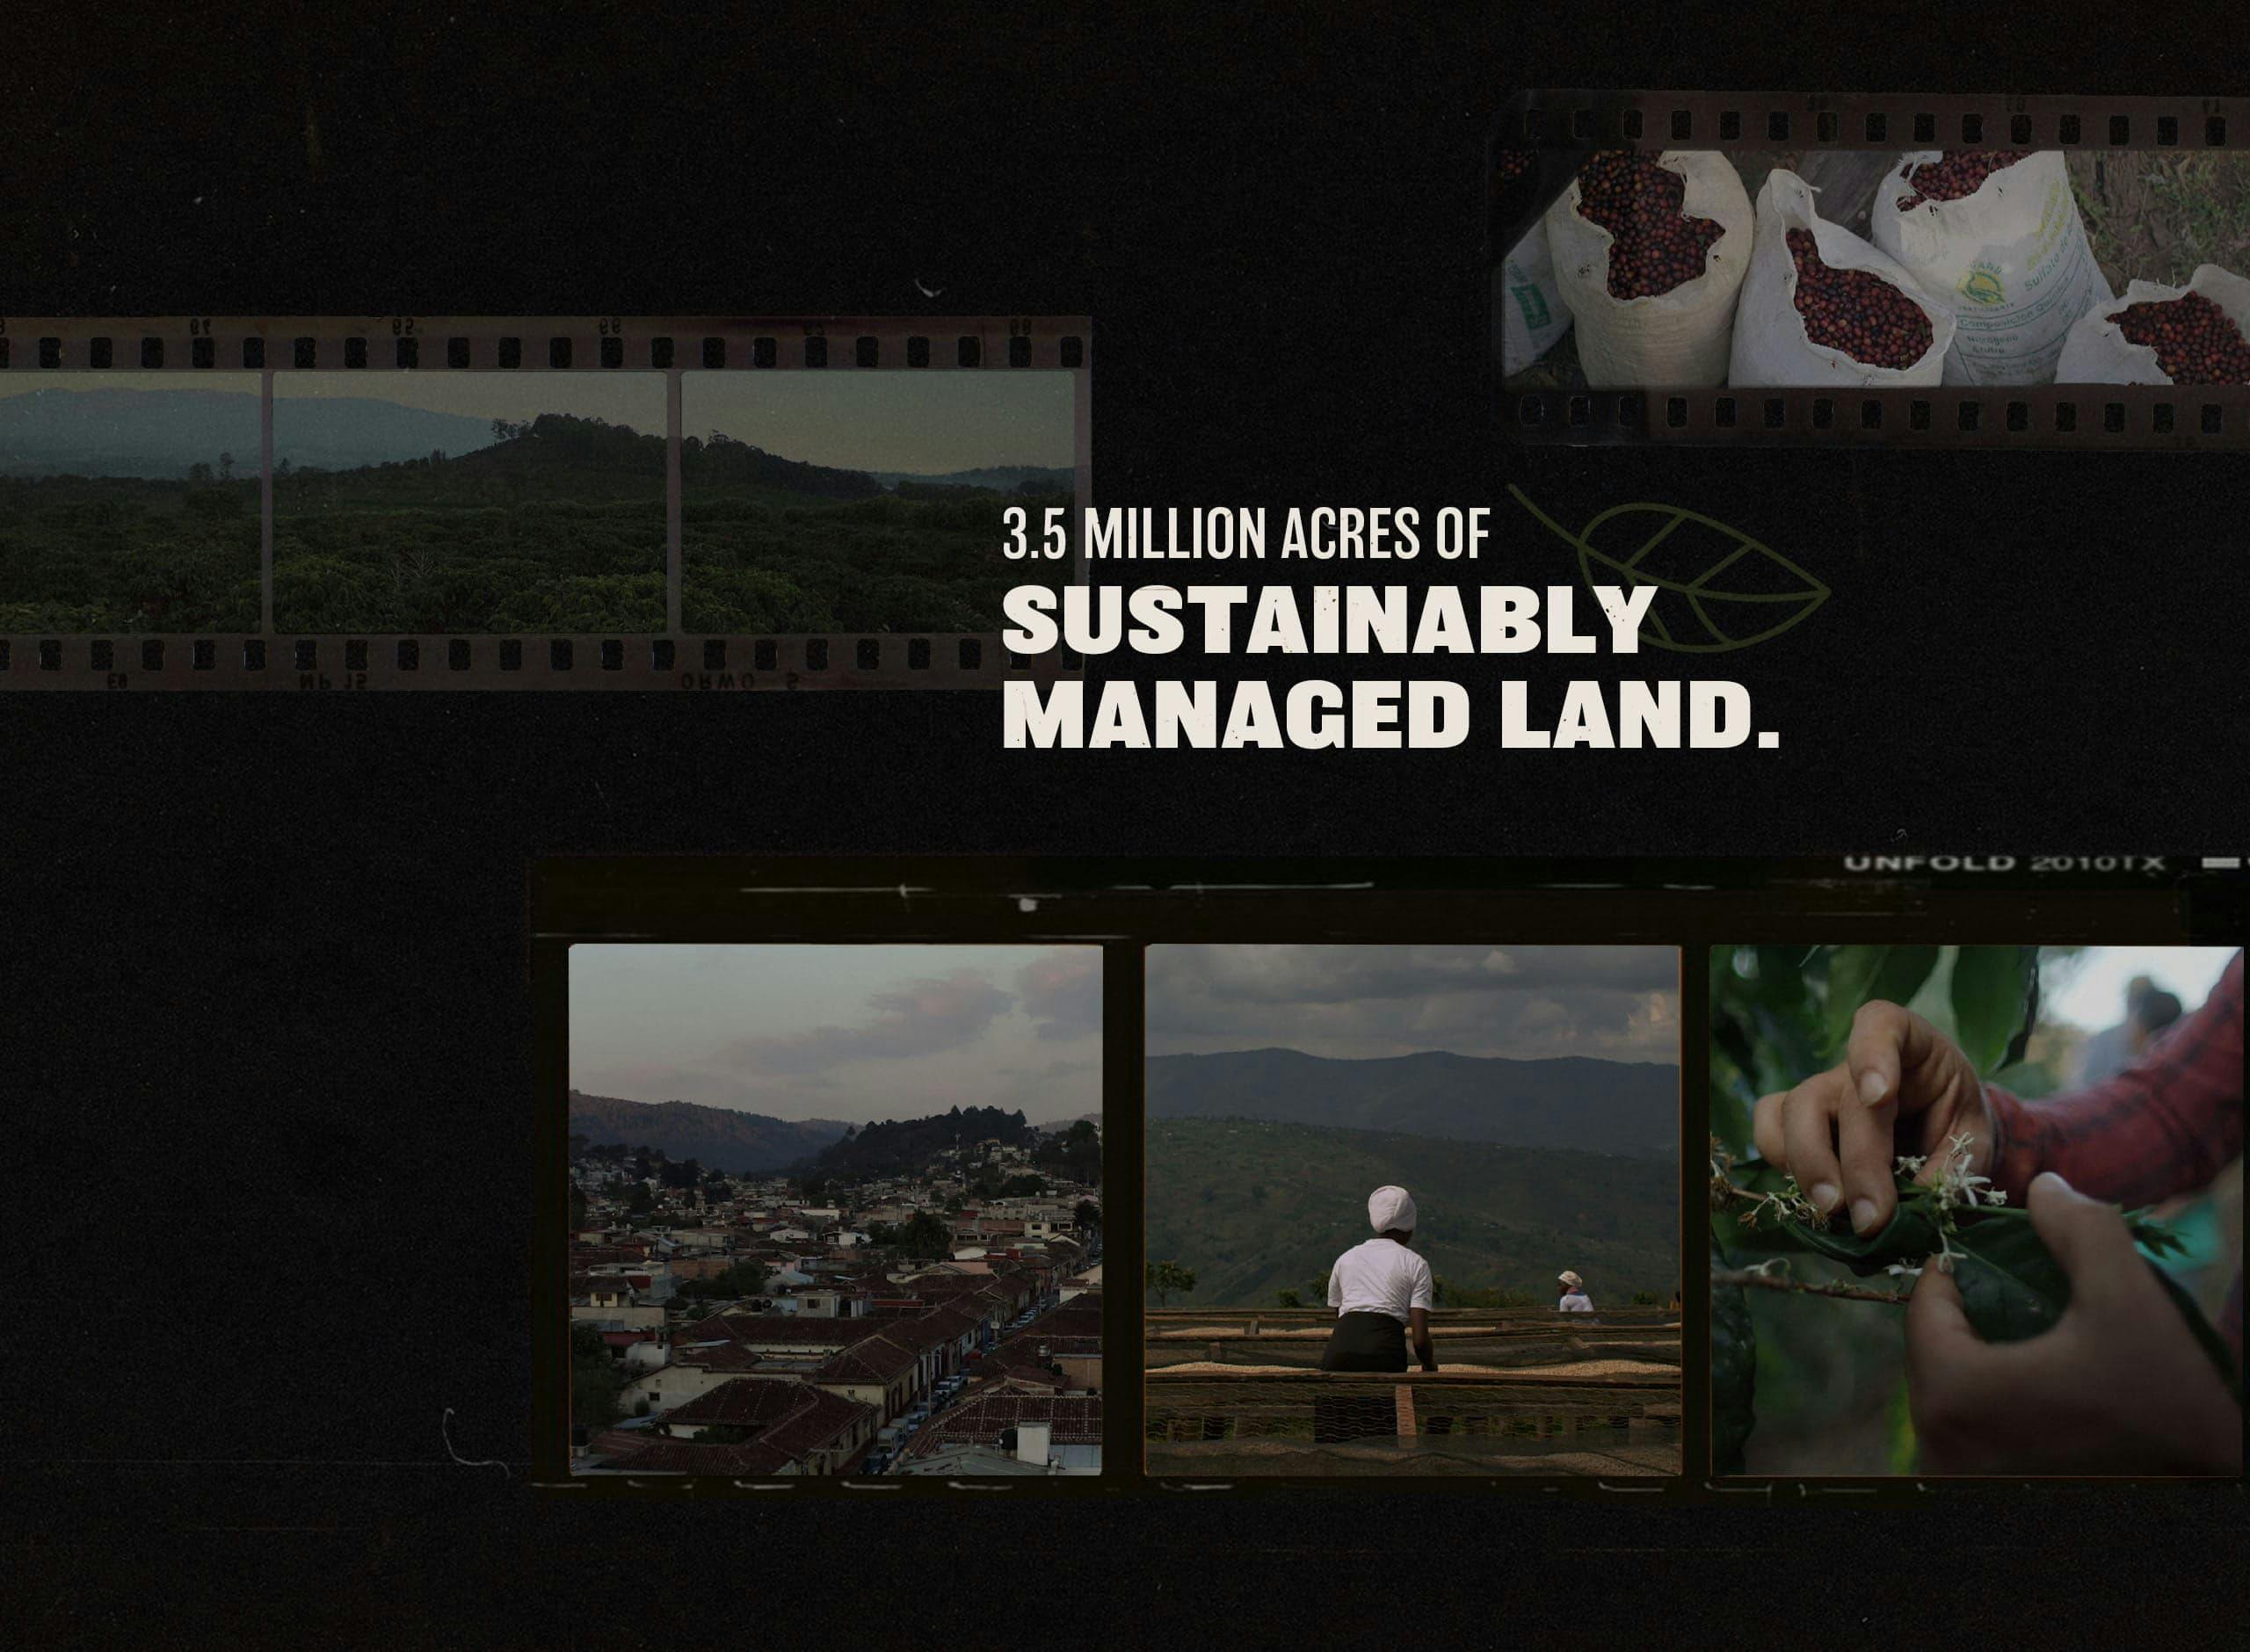 Starbucks origins 3.5 million acres of sustainably managed land.